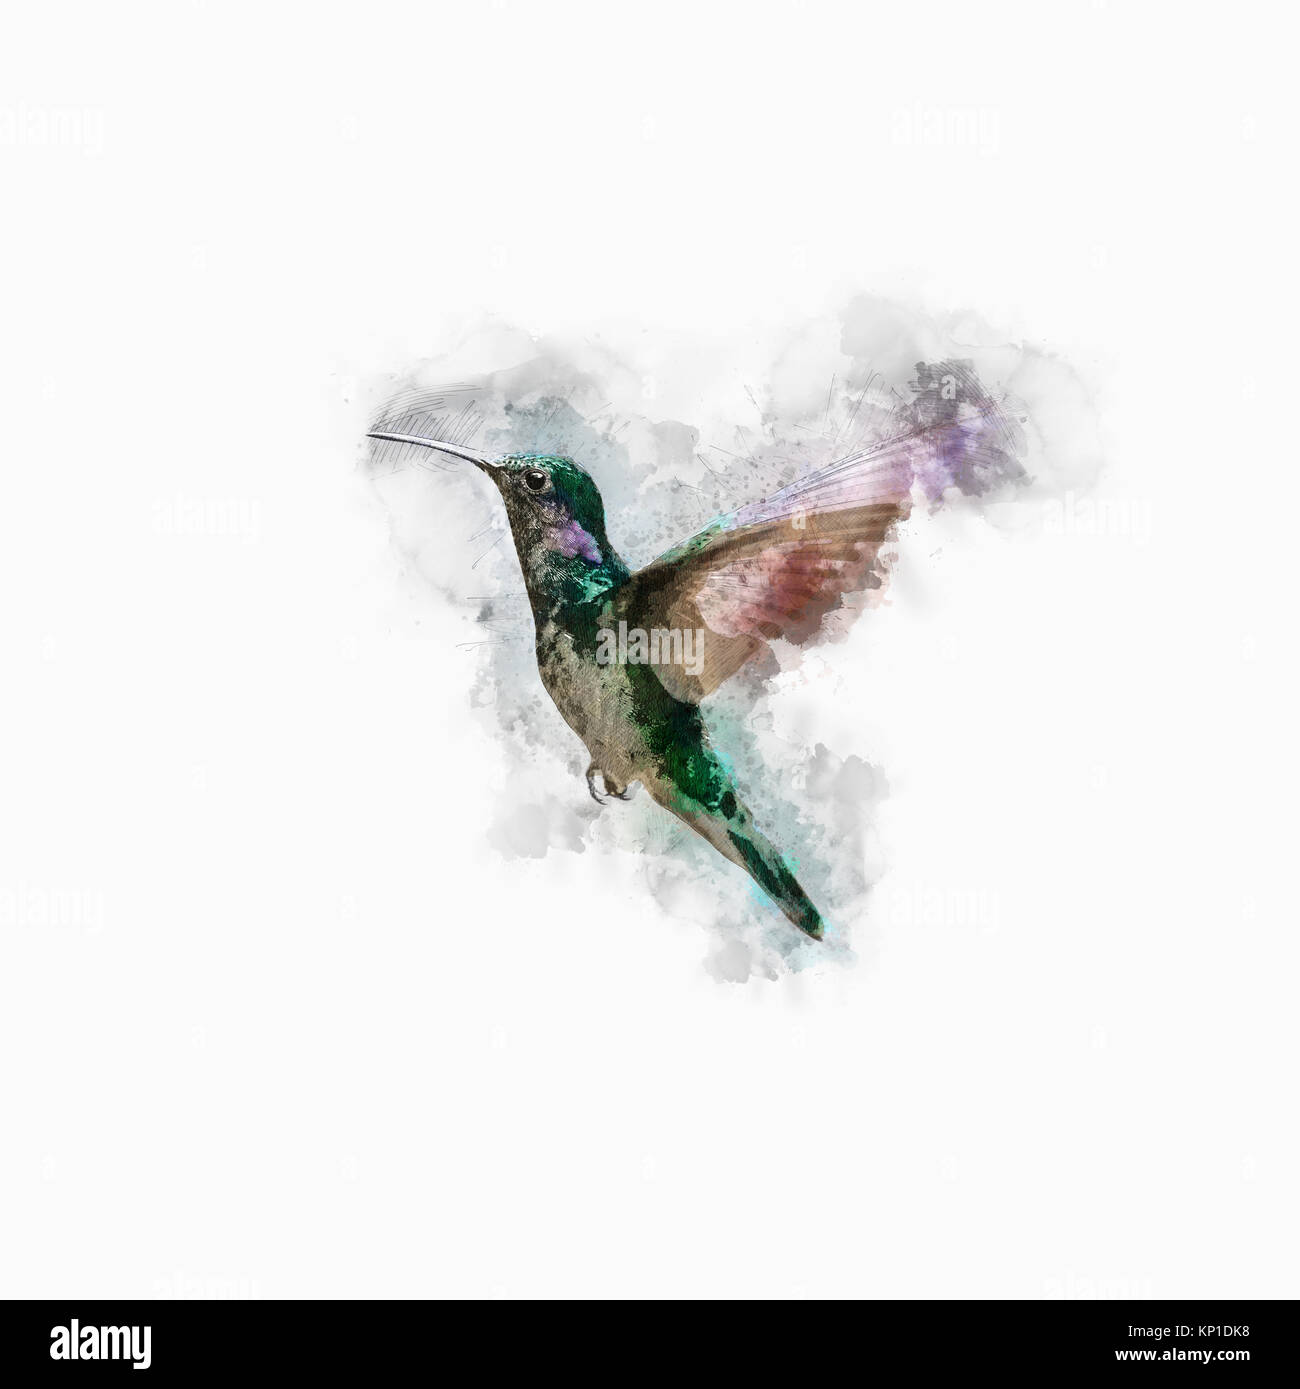 Amélioration de l'image numériquement une hummingbird hovering Banque D'Images